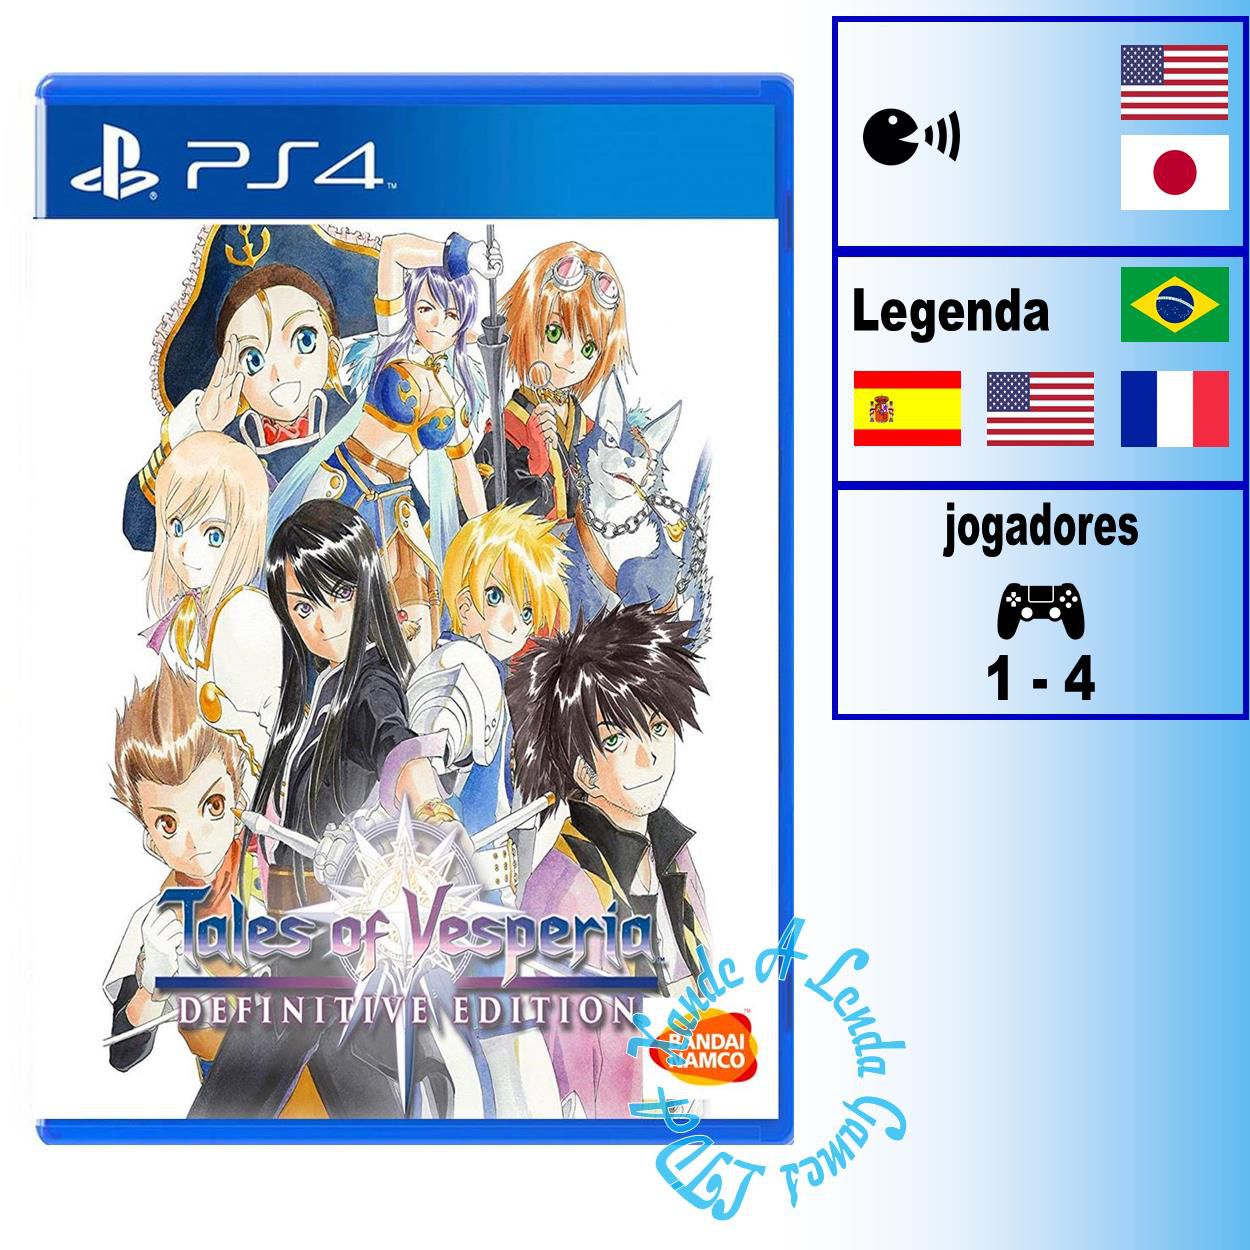 Sombras da Guerra Definitive Edition - PS4